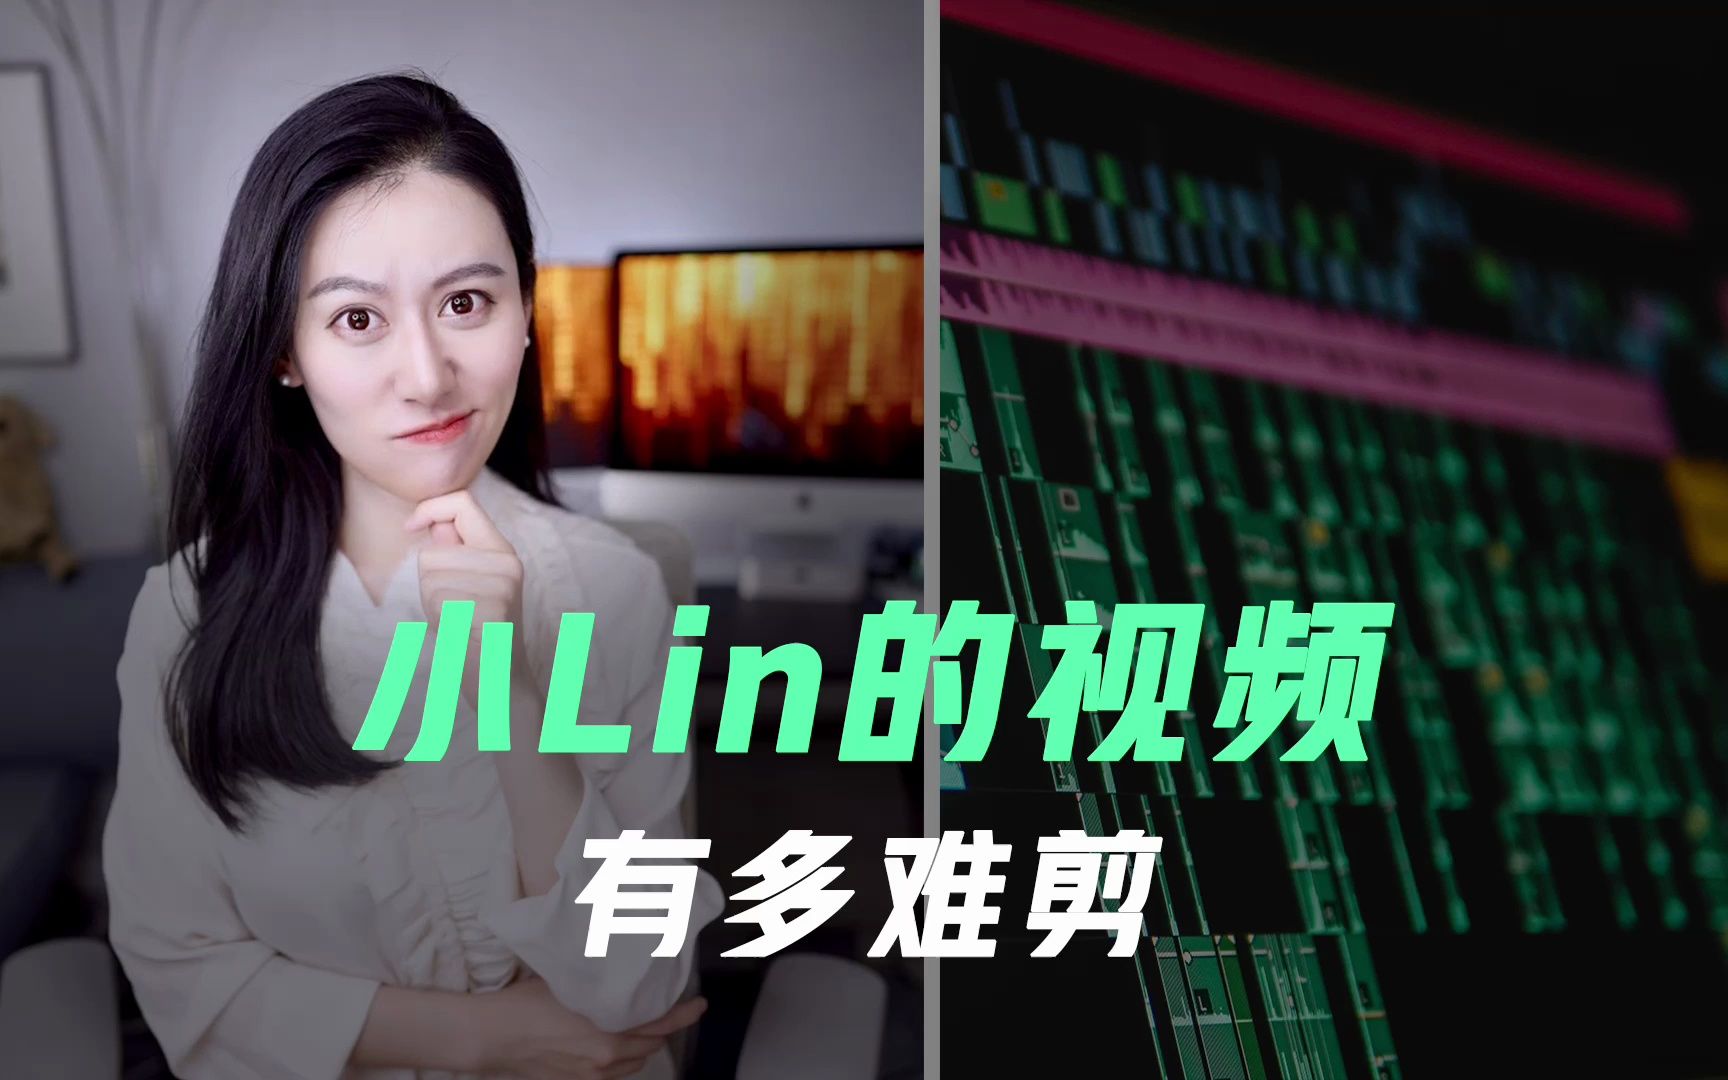 小Lin说的视频无法复制？“3秒钟的片段” 需要 “30分钟的剪辑”。